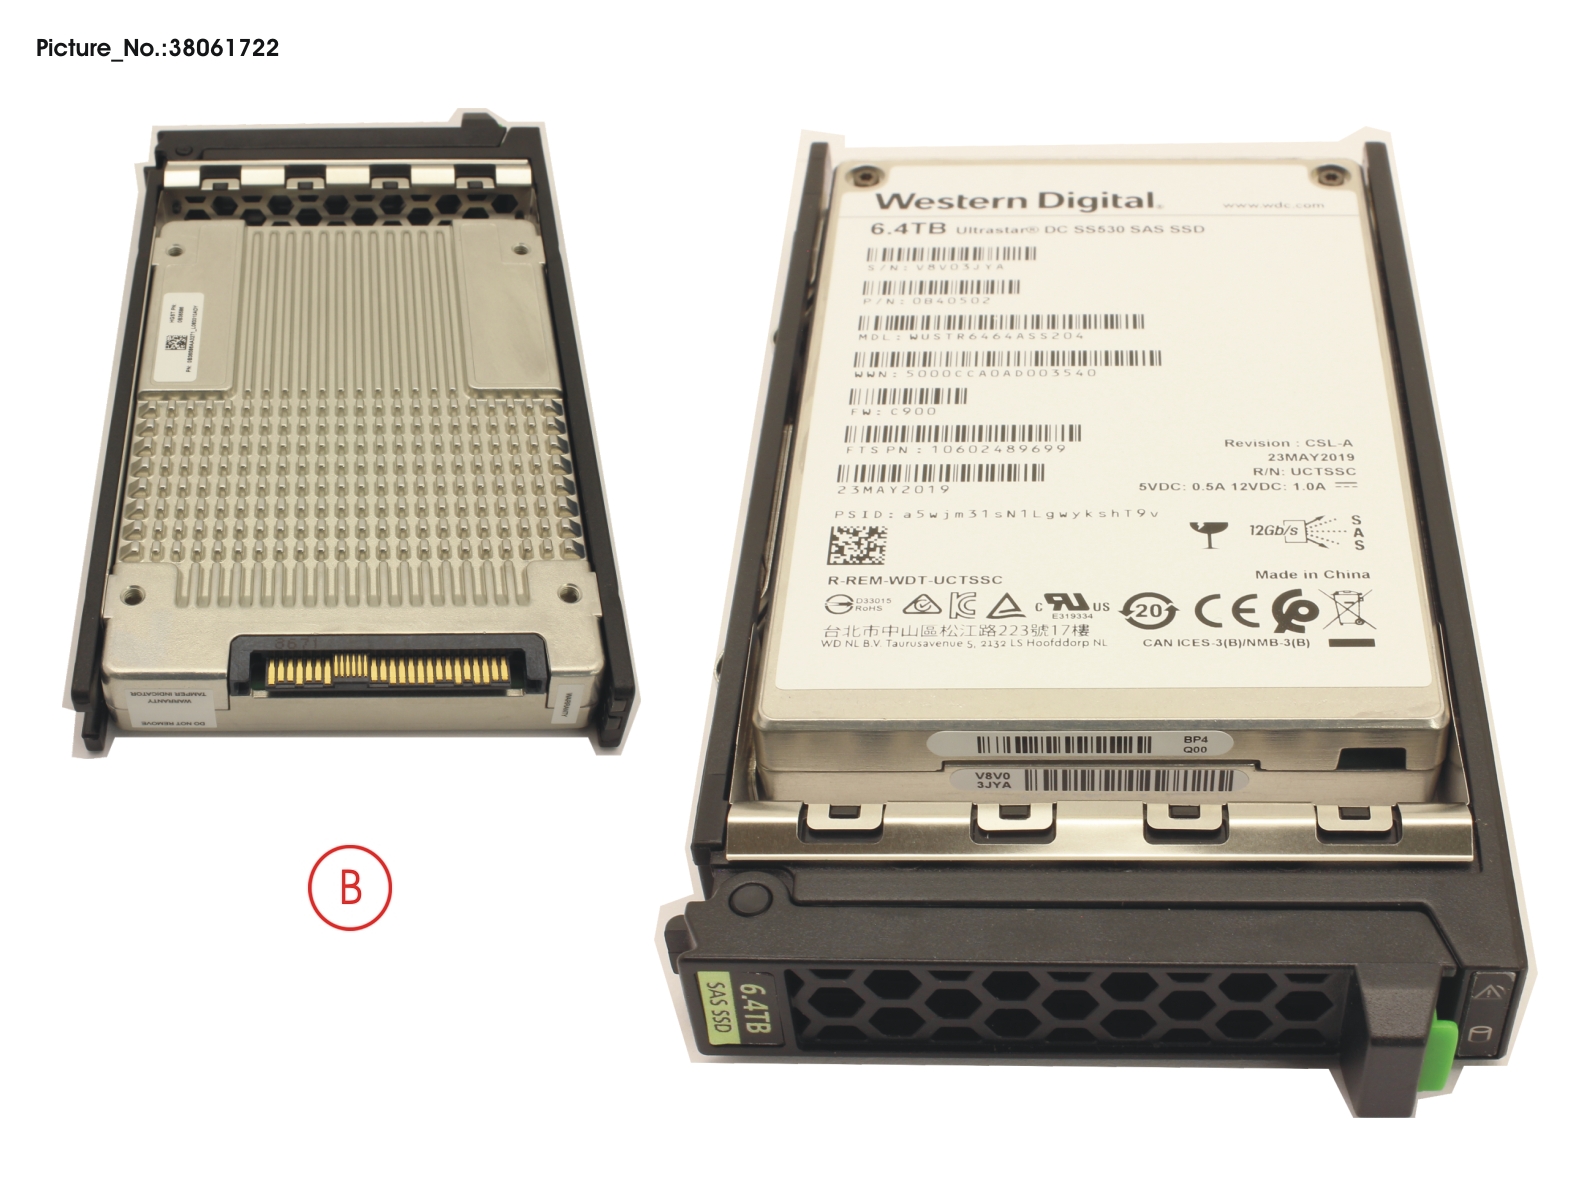 SSD SAS 12G 6.4TB MIXED-USE 2.5 H-P EP